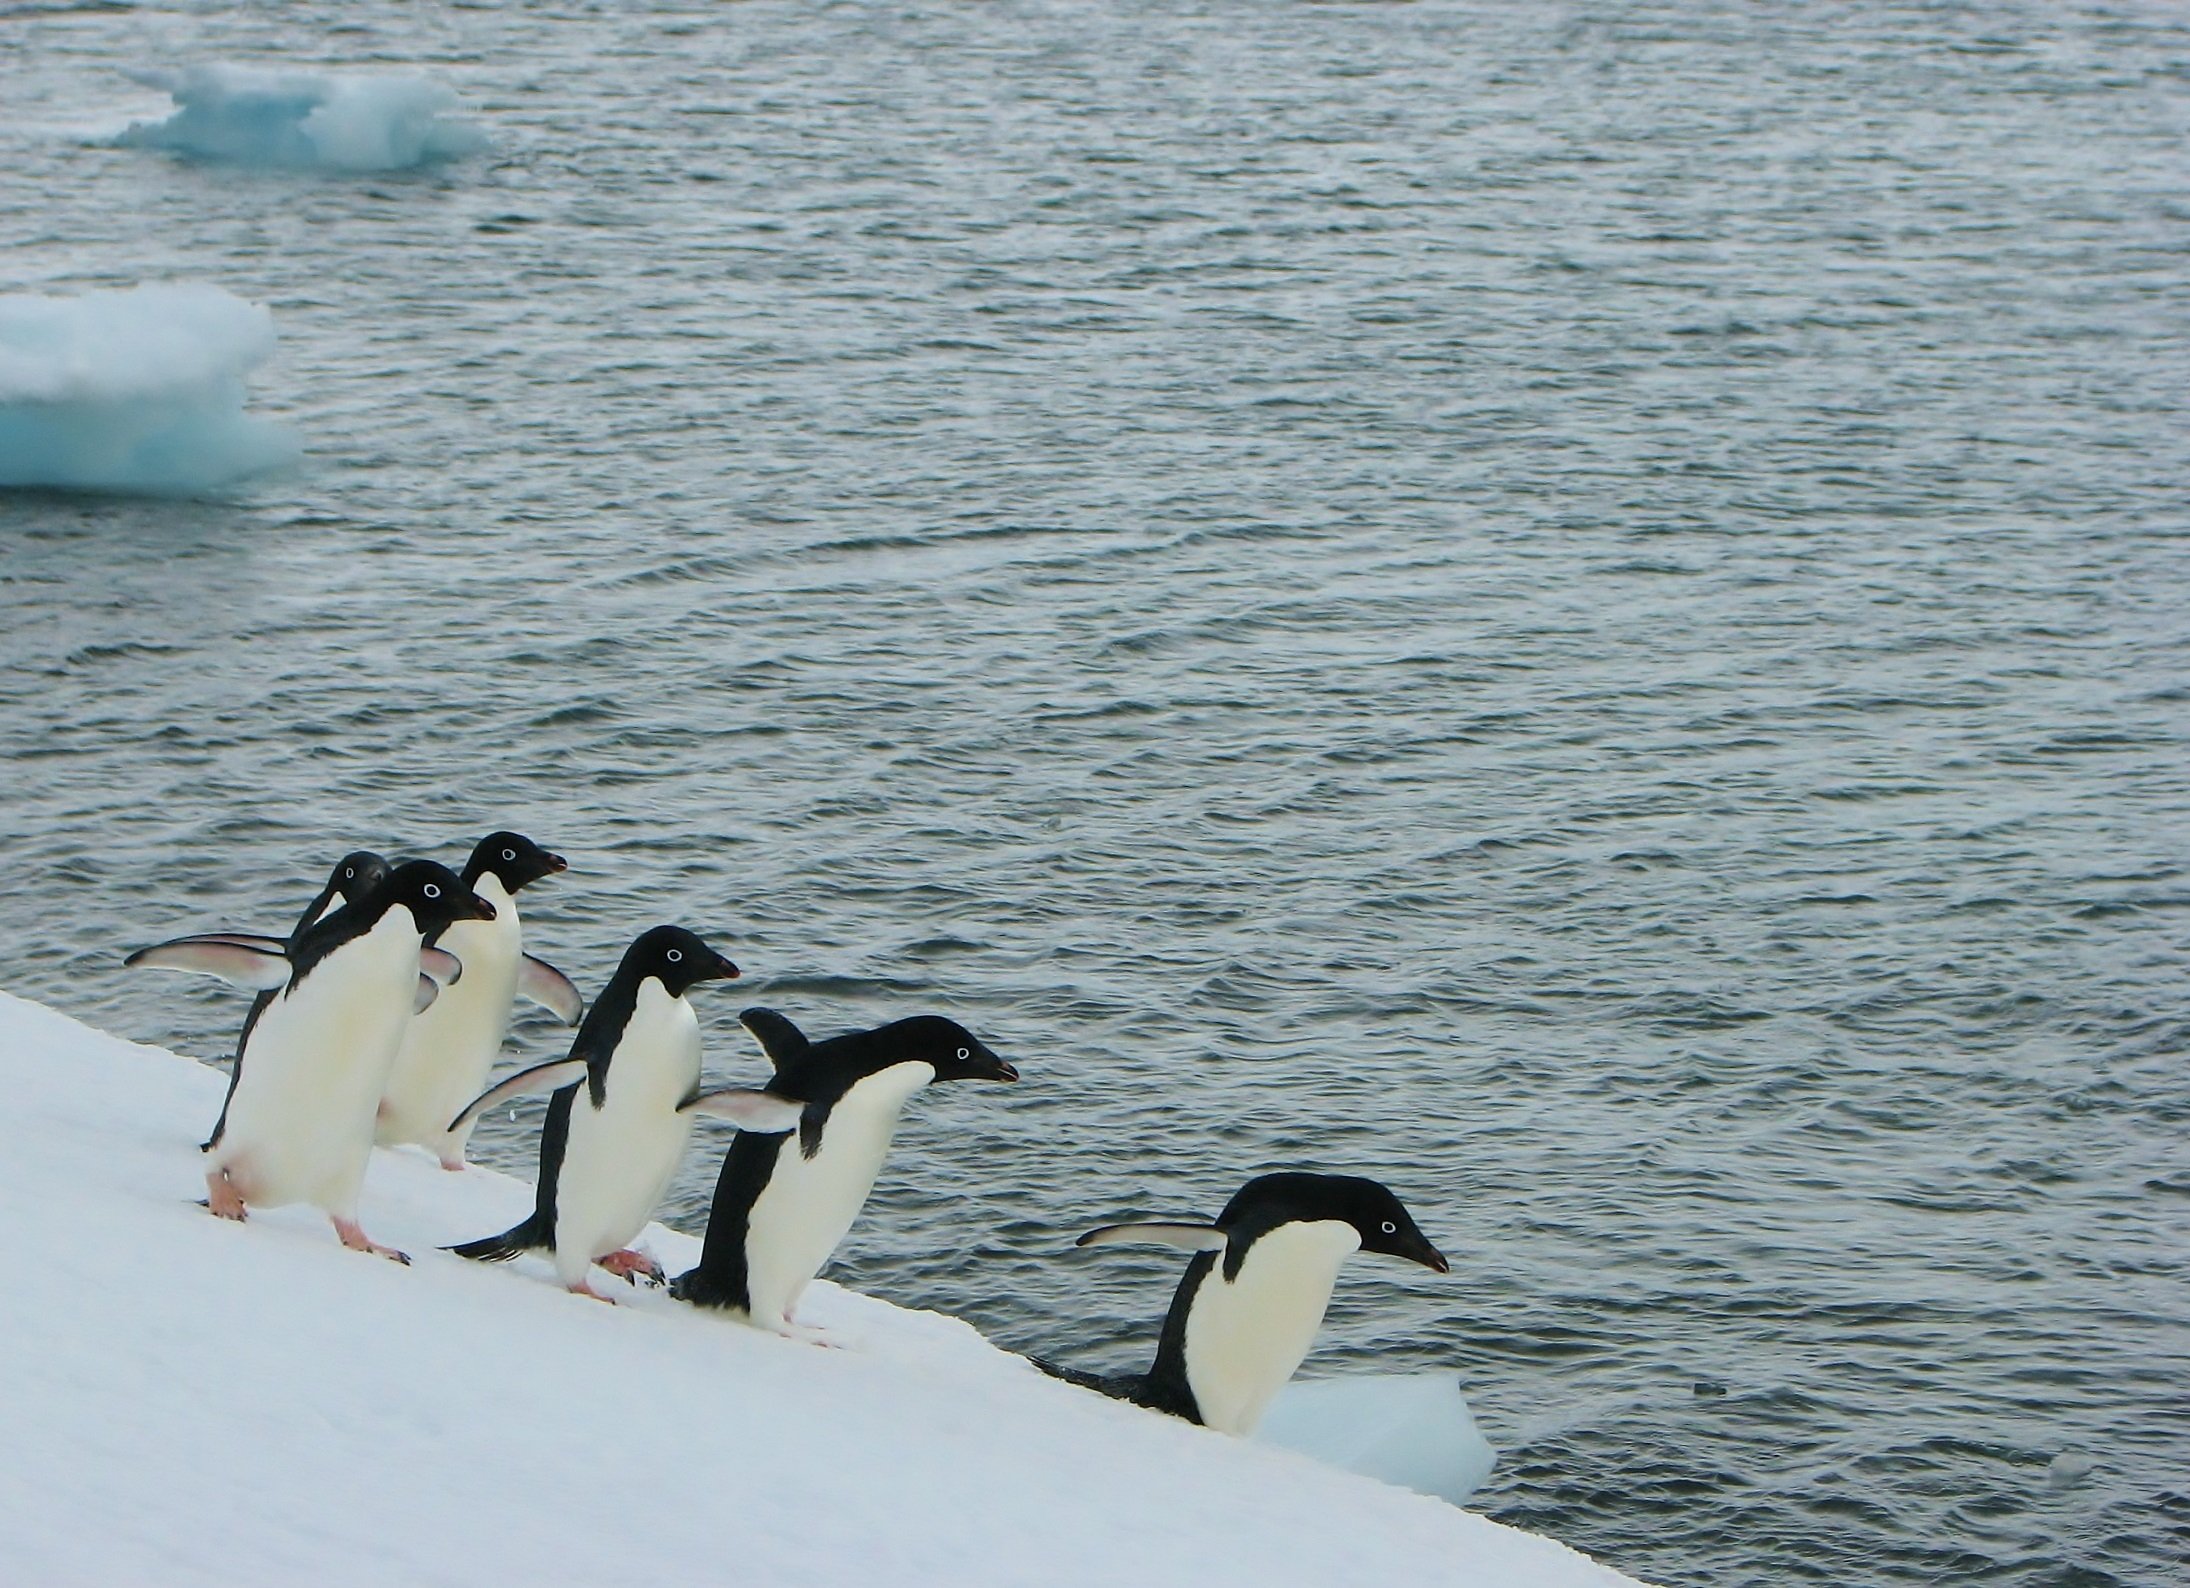 A group of Adélie penguins walking along an iceberg, South Shetland Islands, Antarctic Peninsula.  Photo: J. Hinke, NOAA